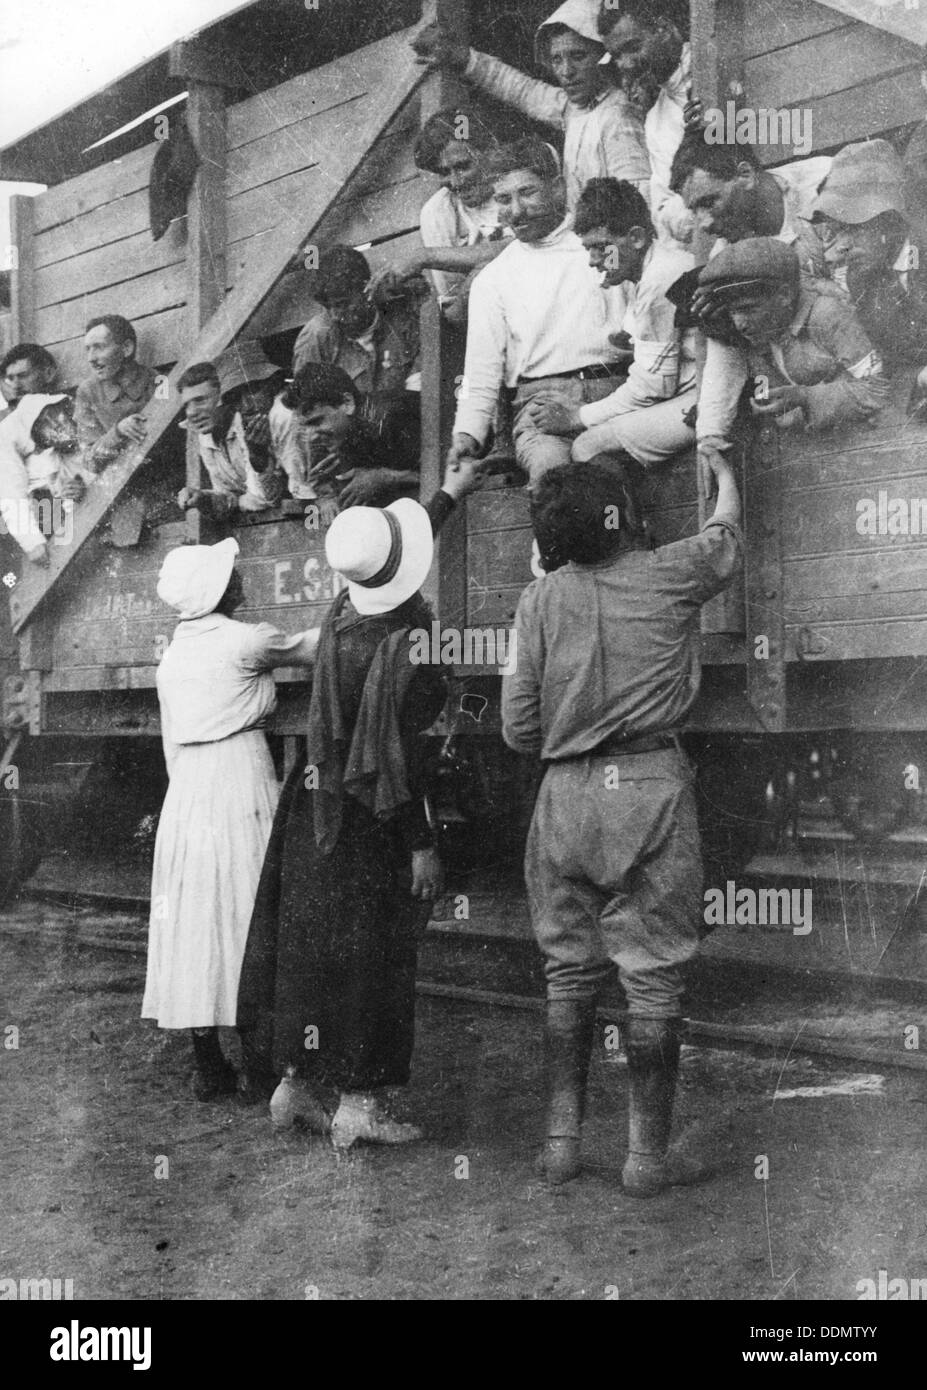 Les volontaires de la Légion juive a dit au revoir à ses parents et ses amis, la Première Guerre mondiale, 1915-1918. Artiste : Inconnu Banque D'Images